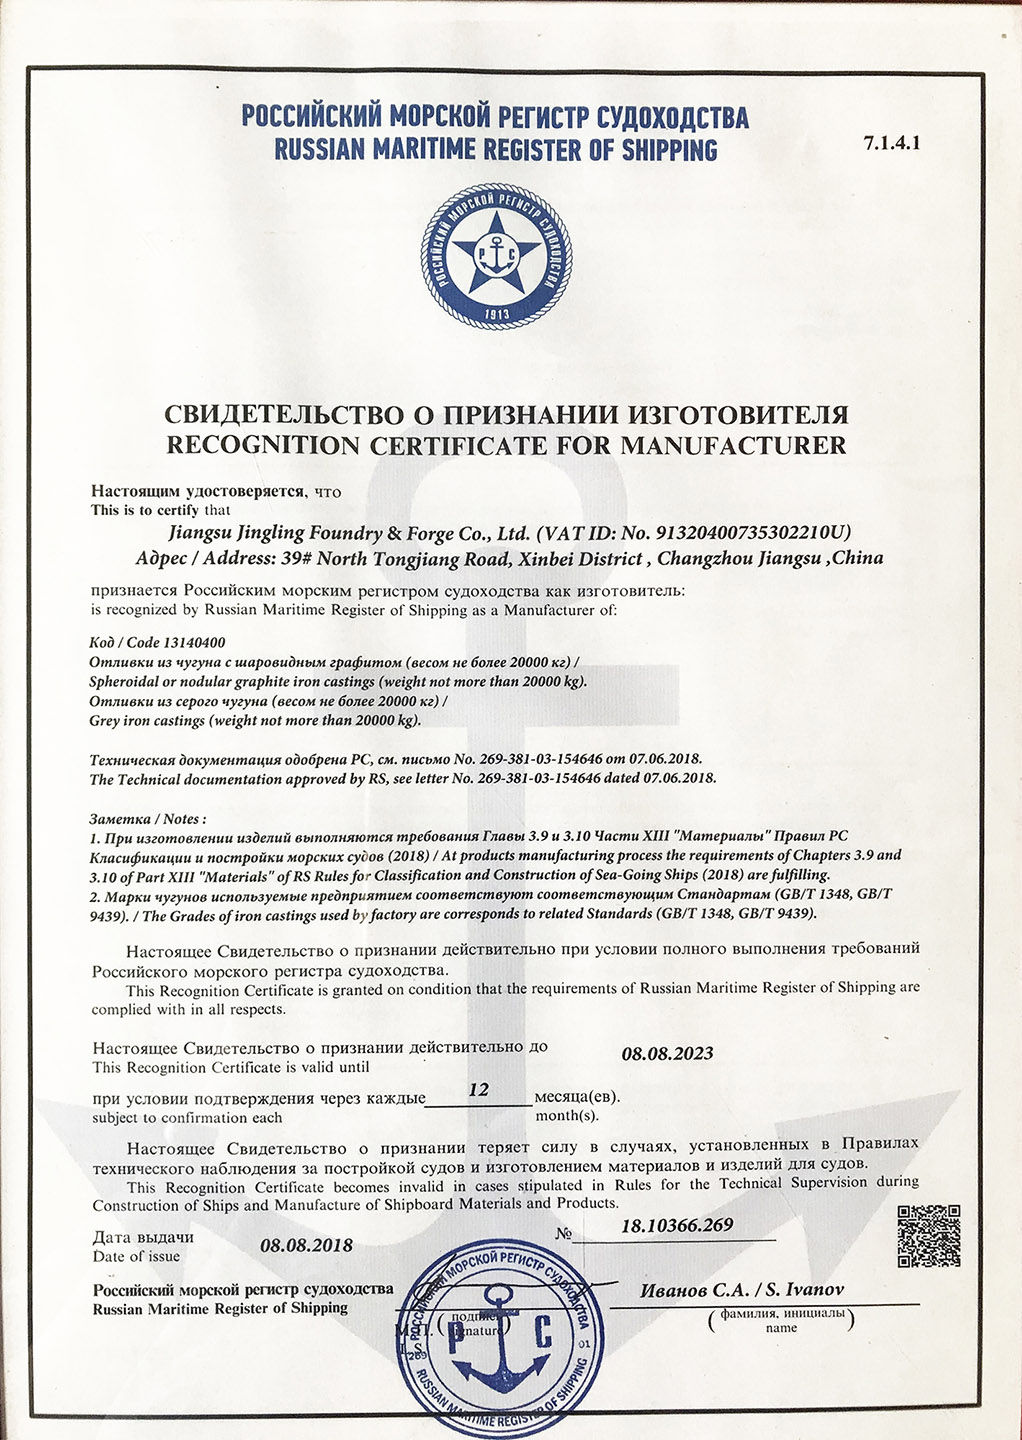 俄罗斯RS船级社认证证书